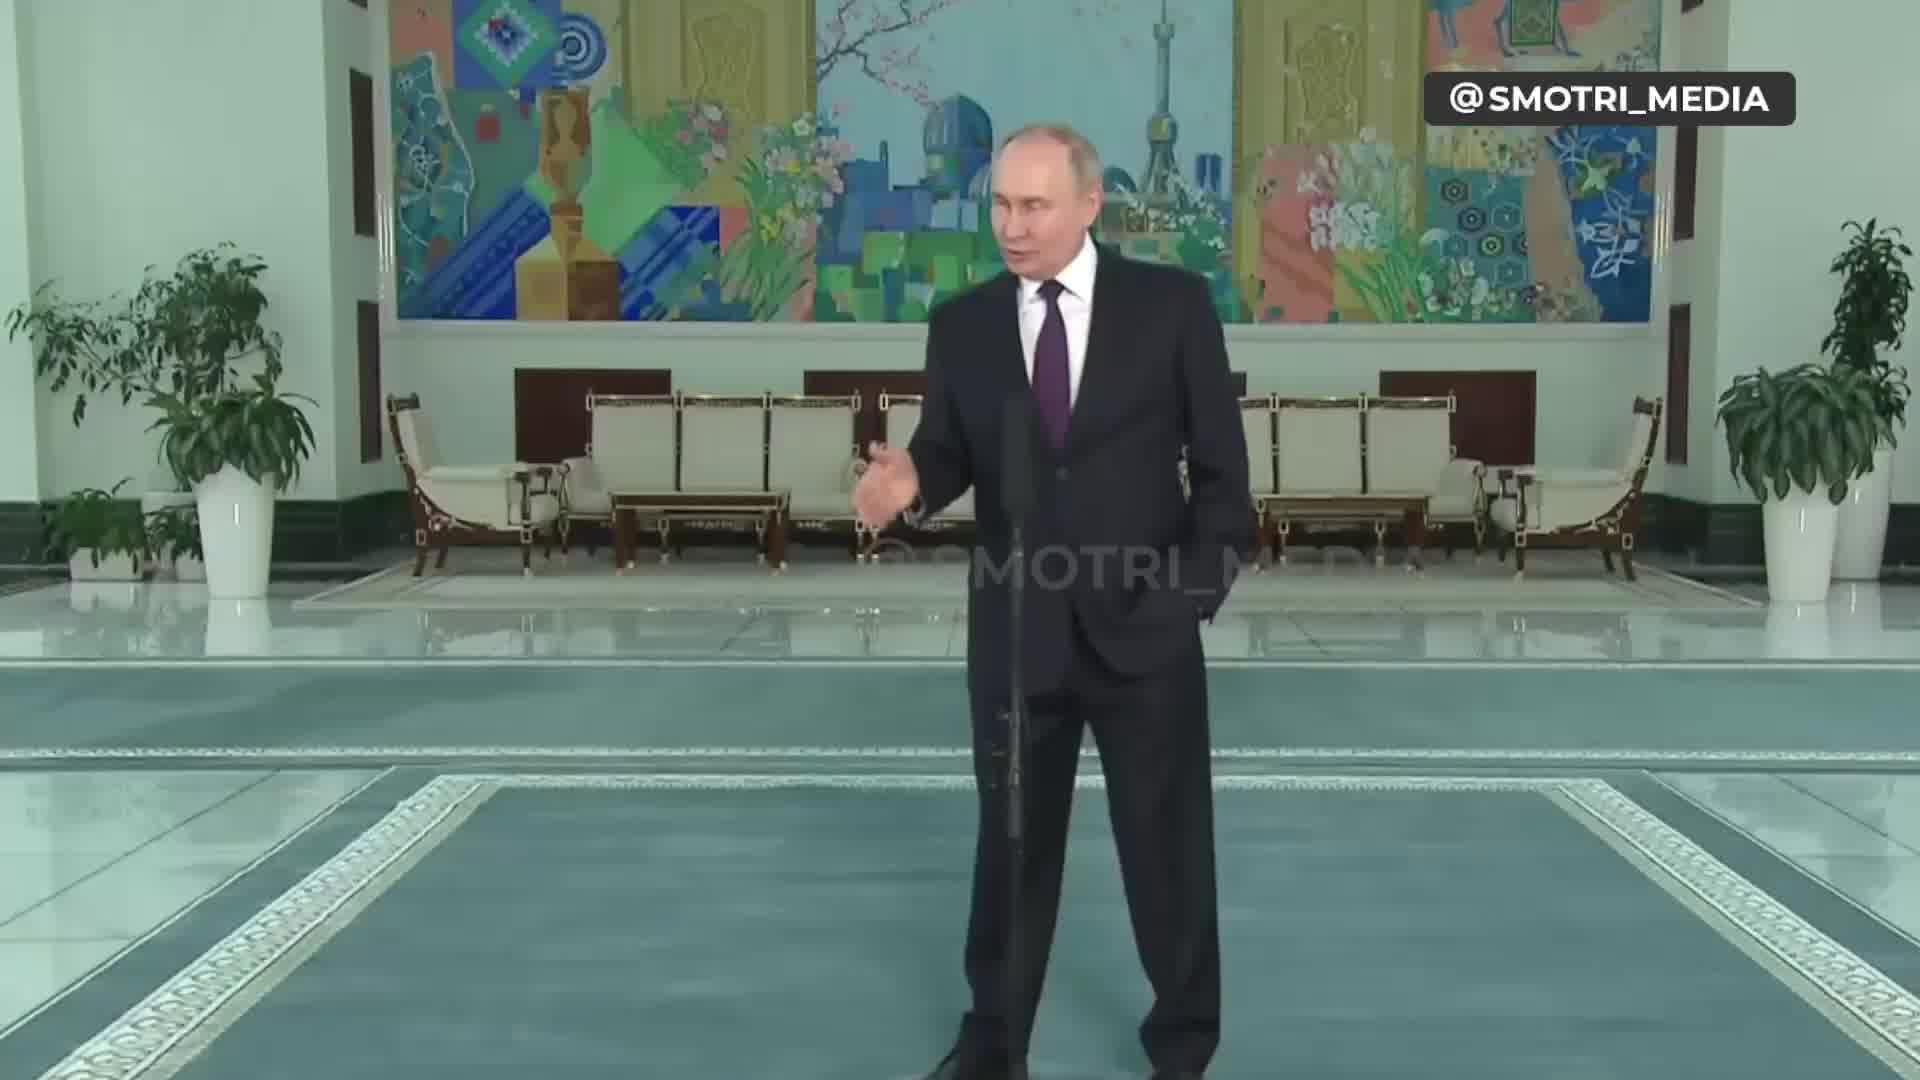 Putin promette che la Russia farà ciò che ha pianificato, indipendentemente dalle truppe che saranno in Ucraina